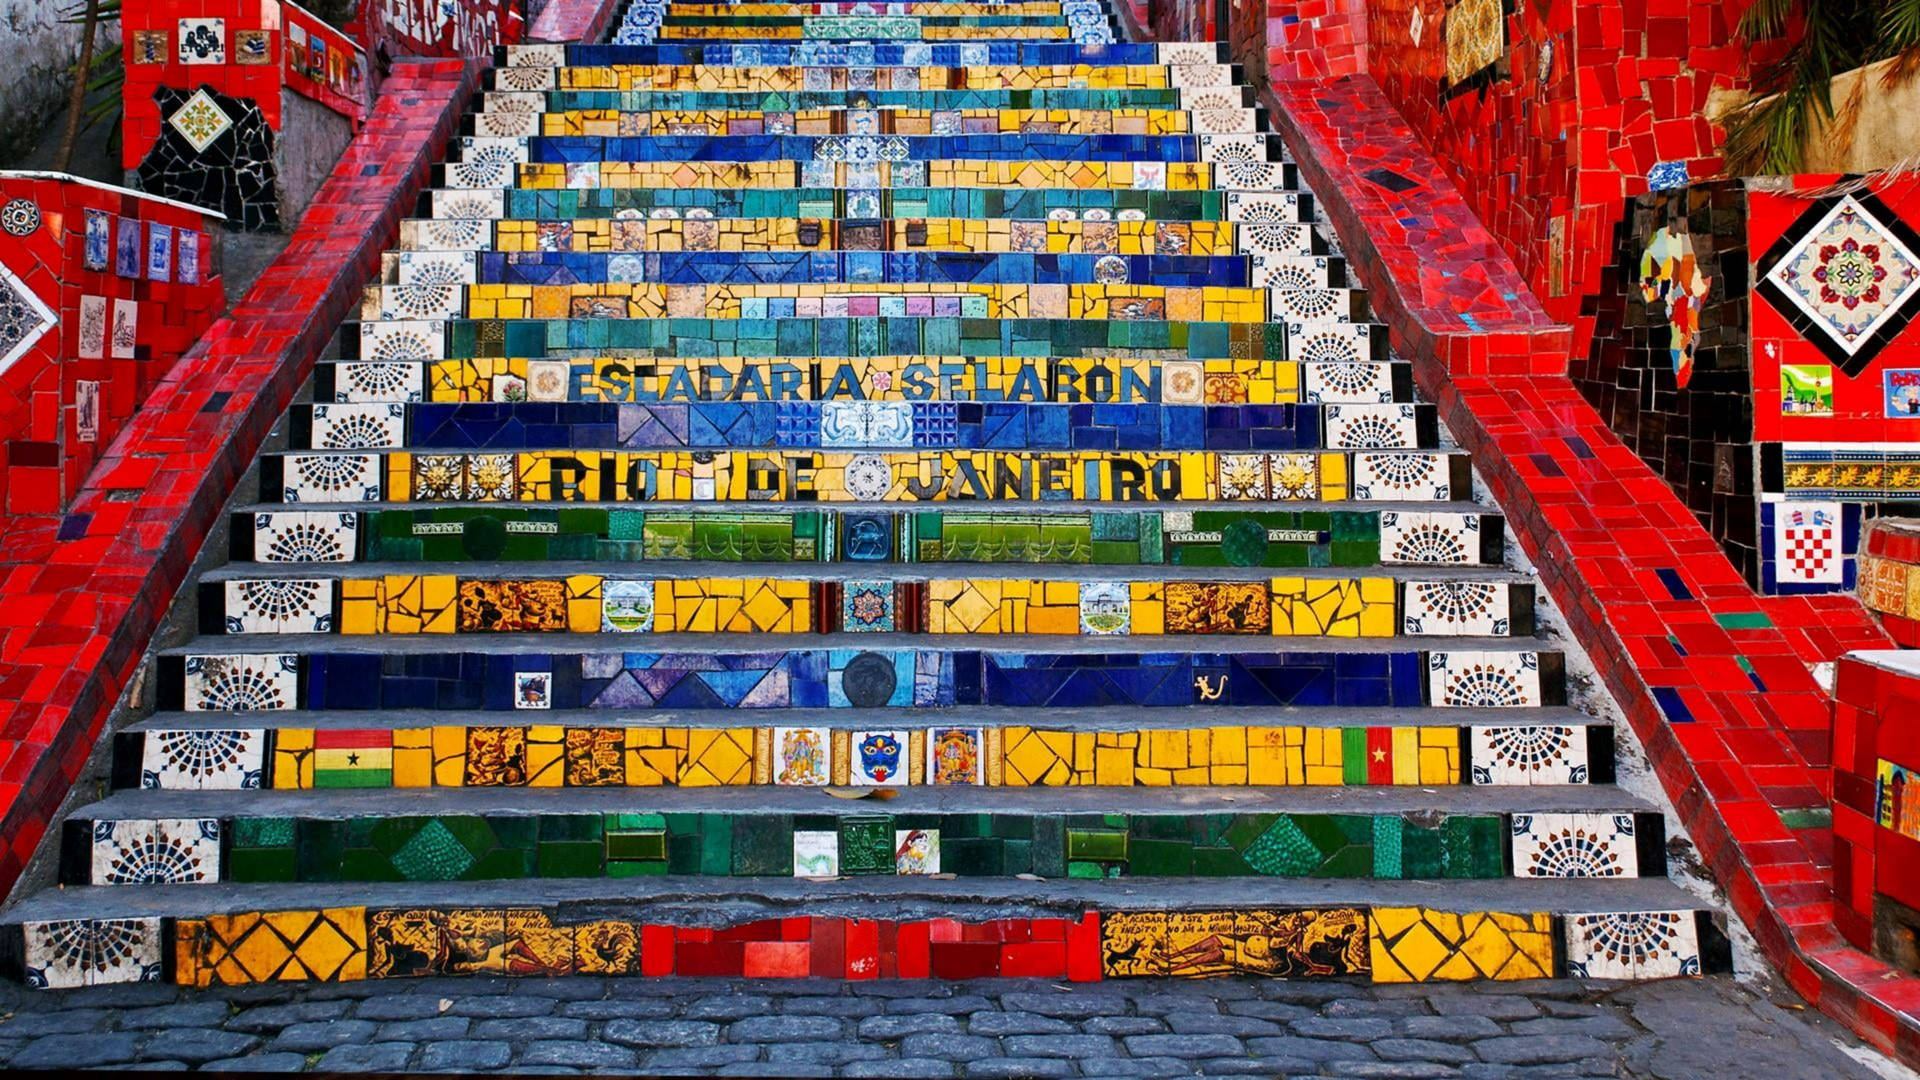 Rio De Janeiro Escadaria Selarón Wallpaper